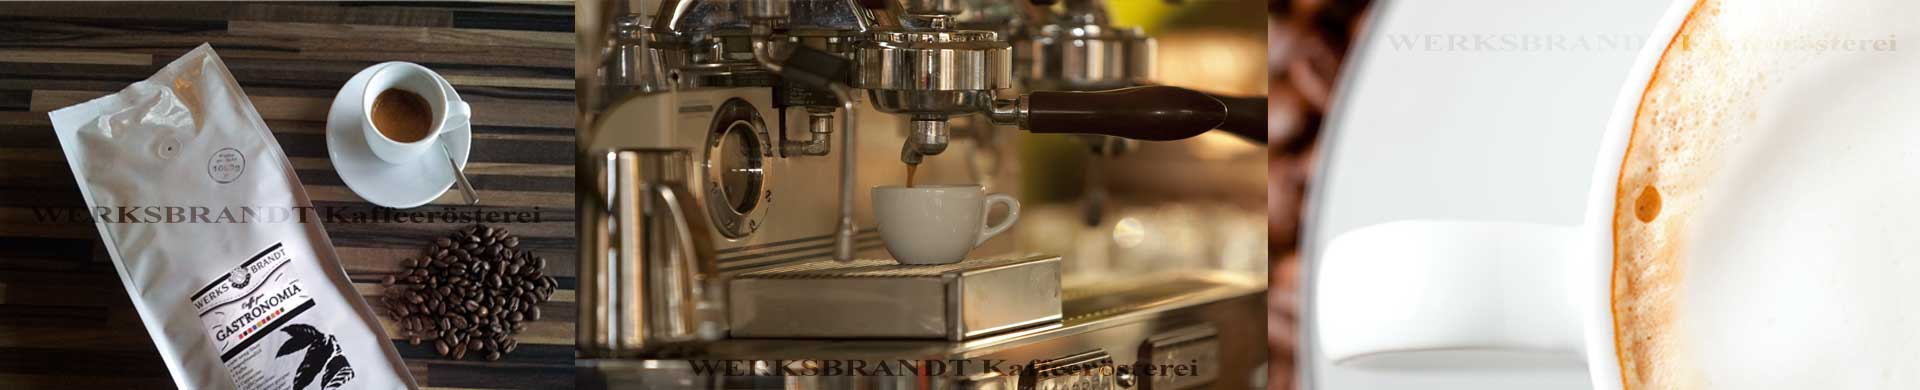 WERKSBRANDT Kaffeerösterei Impressionen Kaffeemaschine Espressomaschine Kaffeebohnen Cappuccino